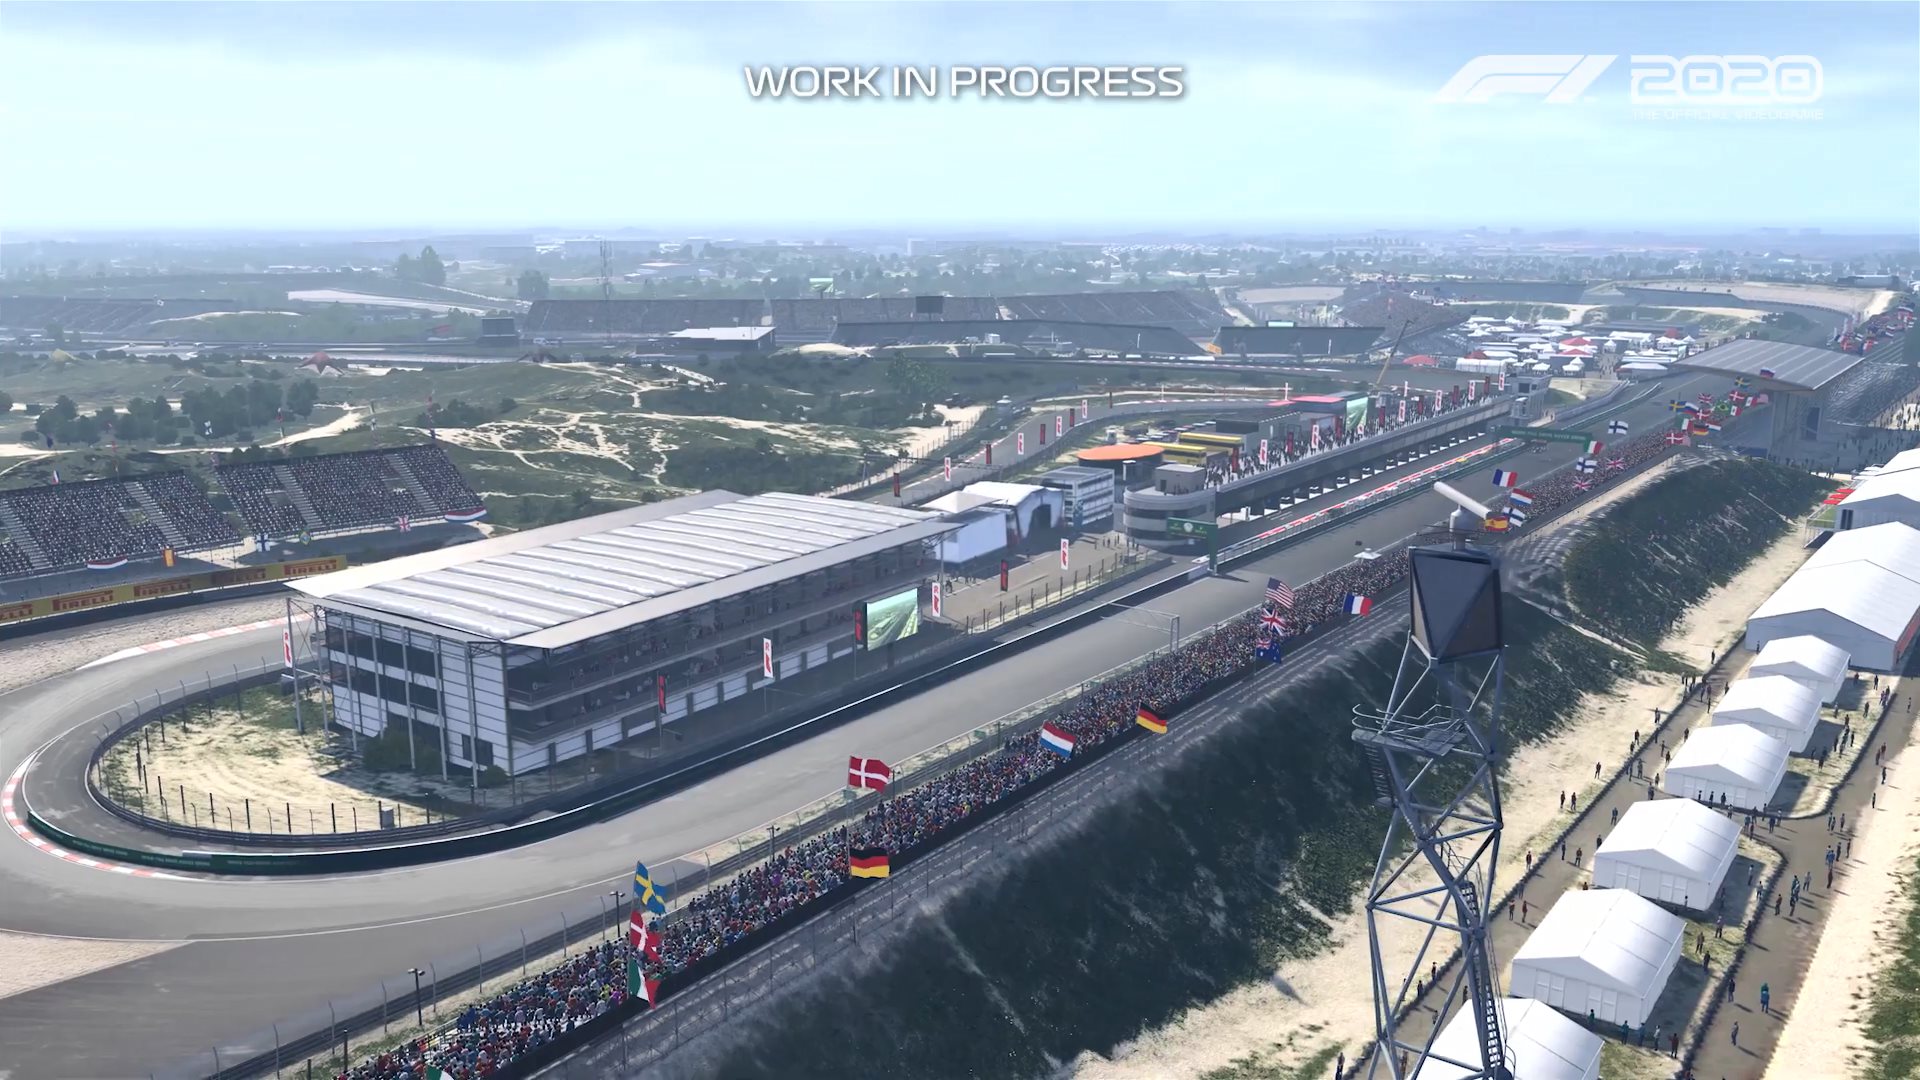 引擎轟鳴賽道狂飆 《F1 2020》單圈演示視頻放出